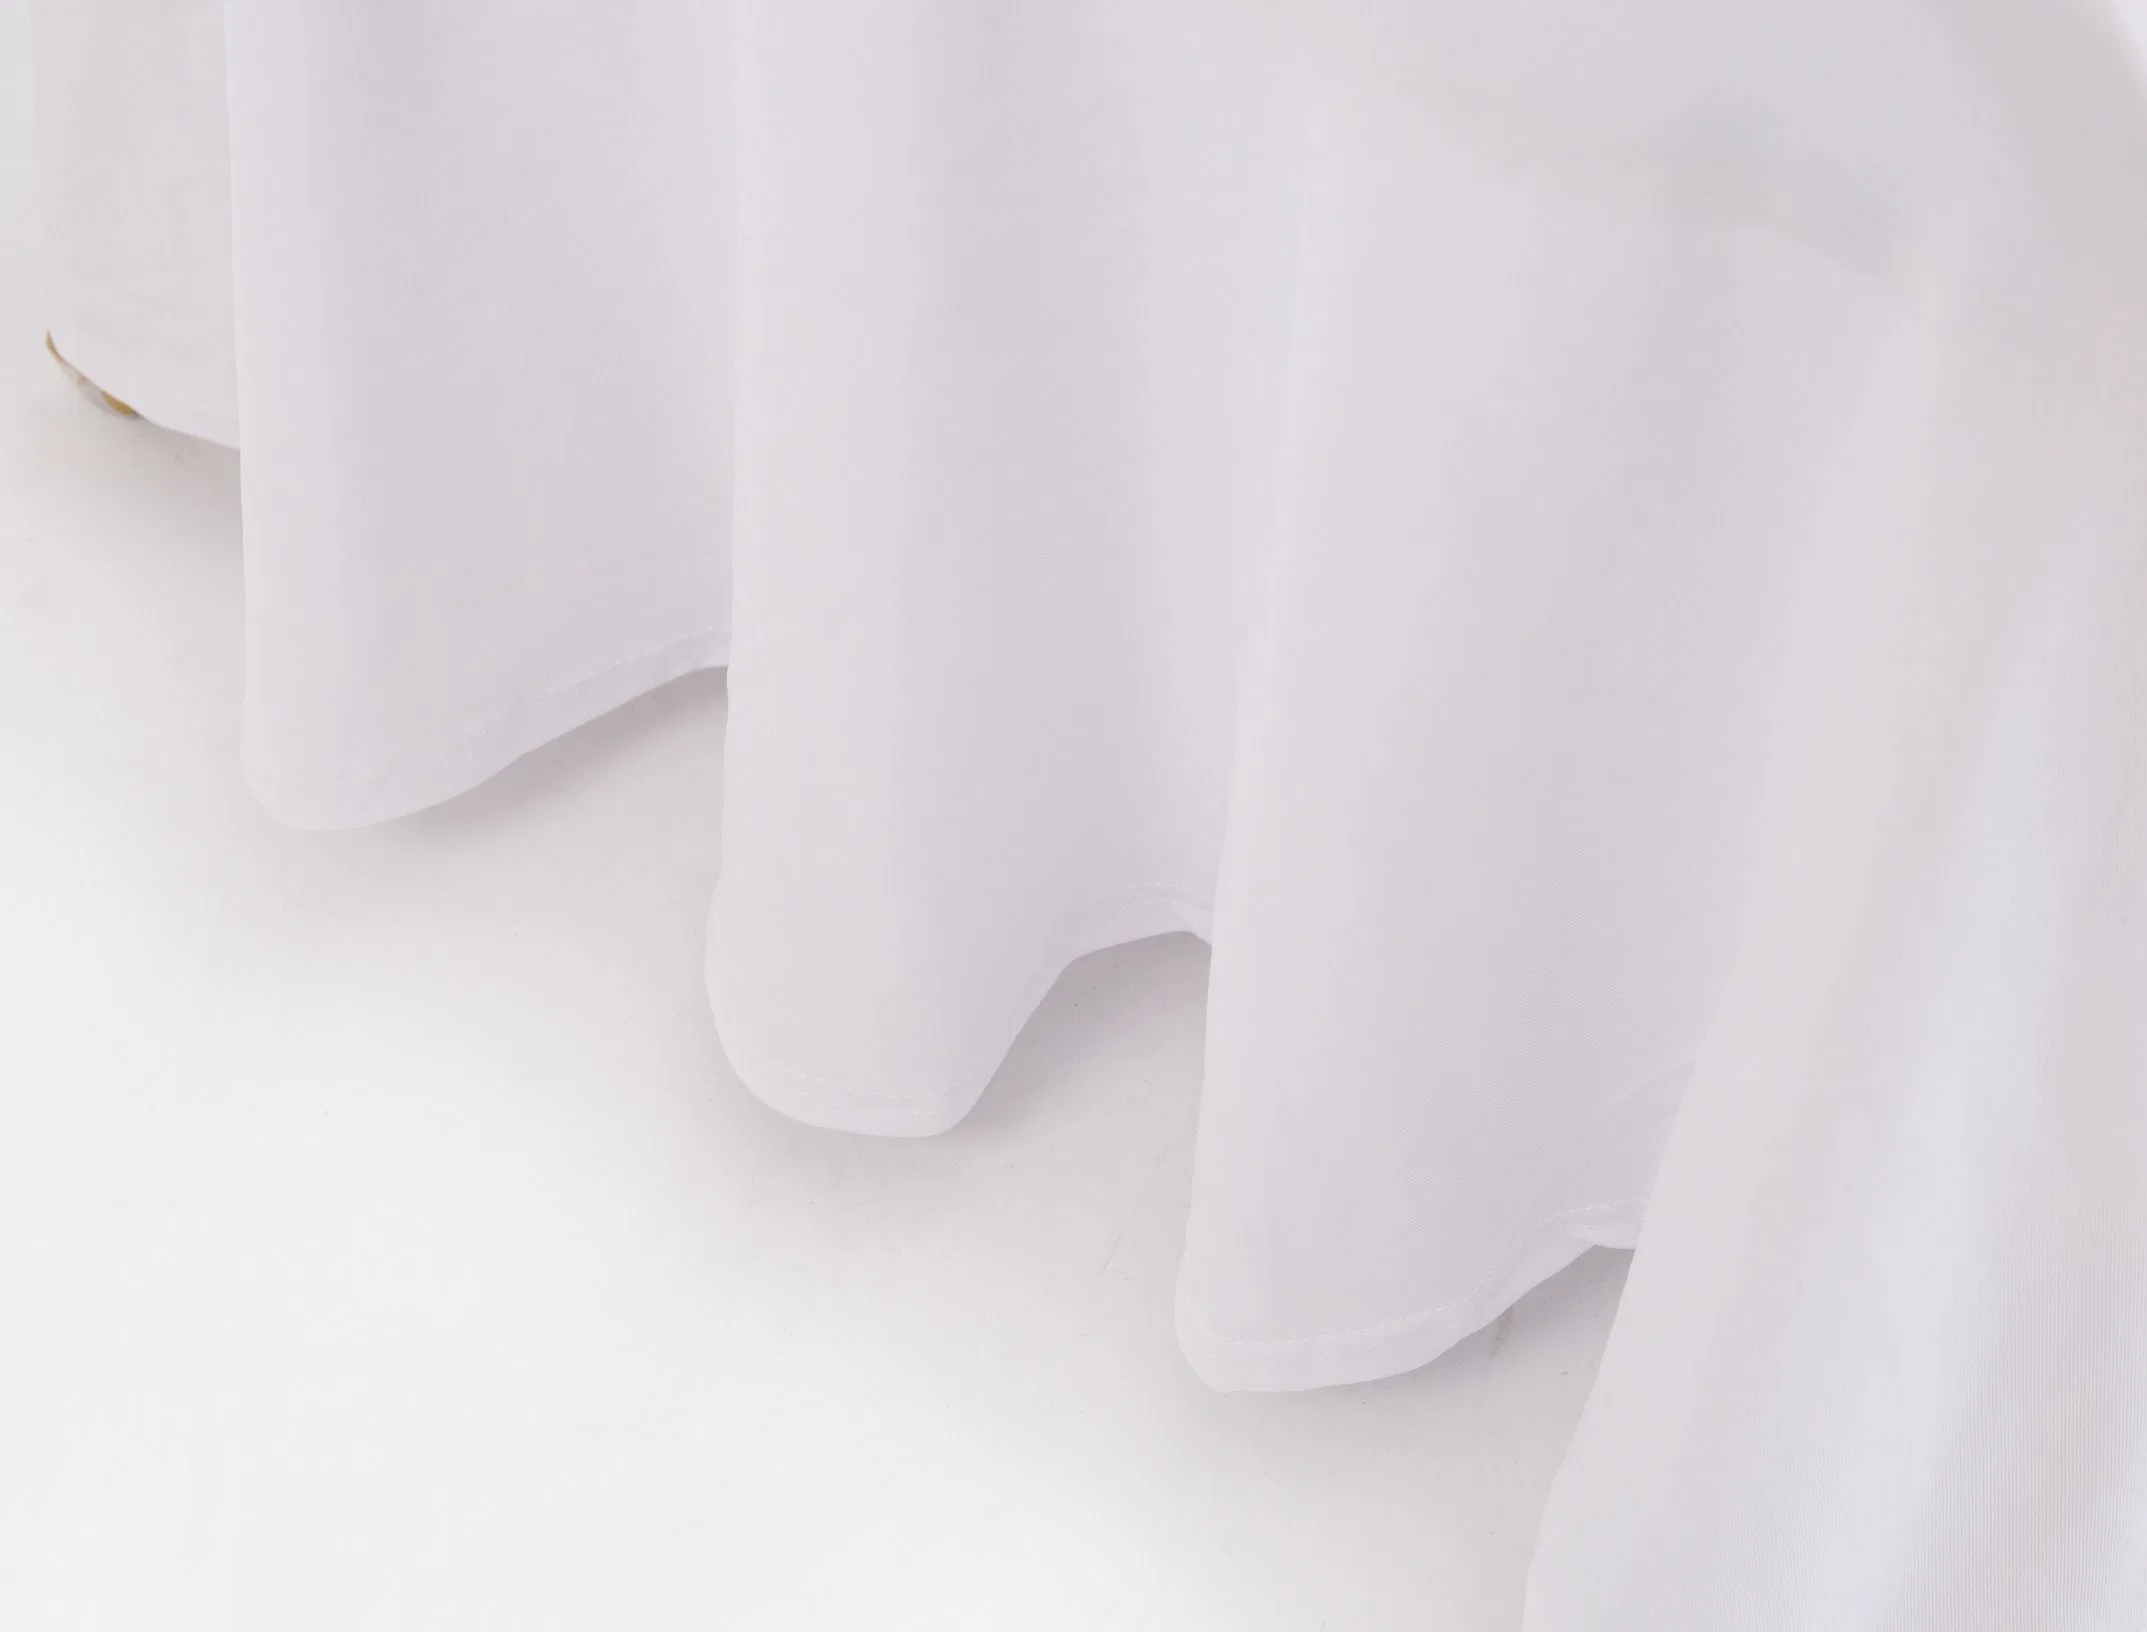 ترجمة المحتوى الموجود في حقل originalText السابق إلى العربية: "غطاء كرسي مطاطي مطاطي مع تنورة للحفلات والأعراس"